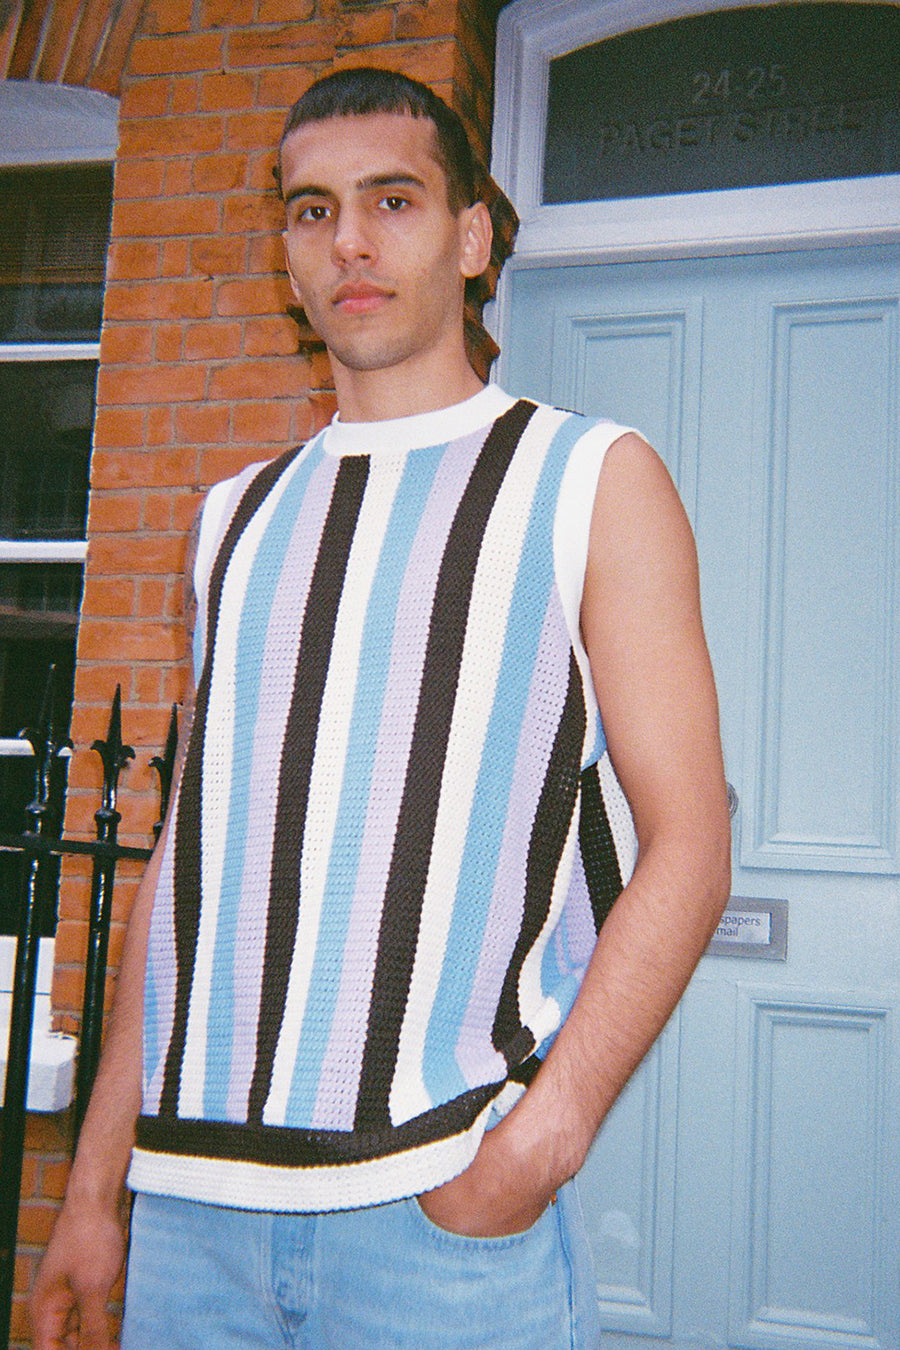 stripe knit vest